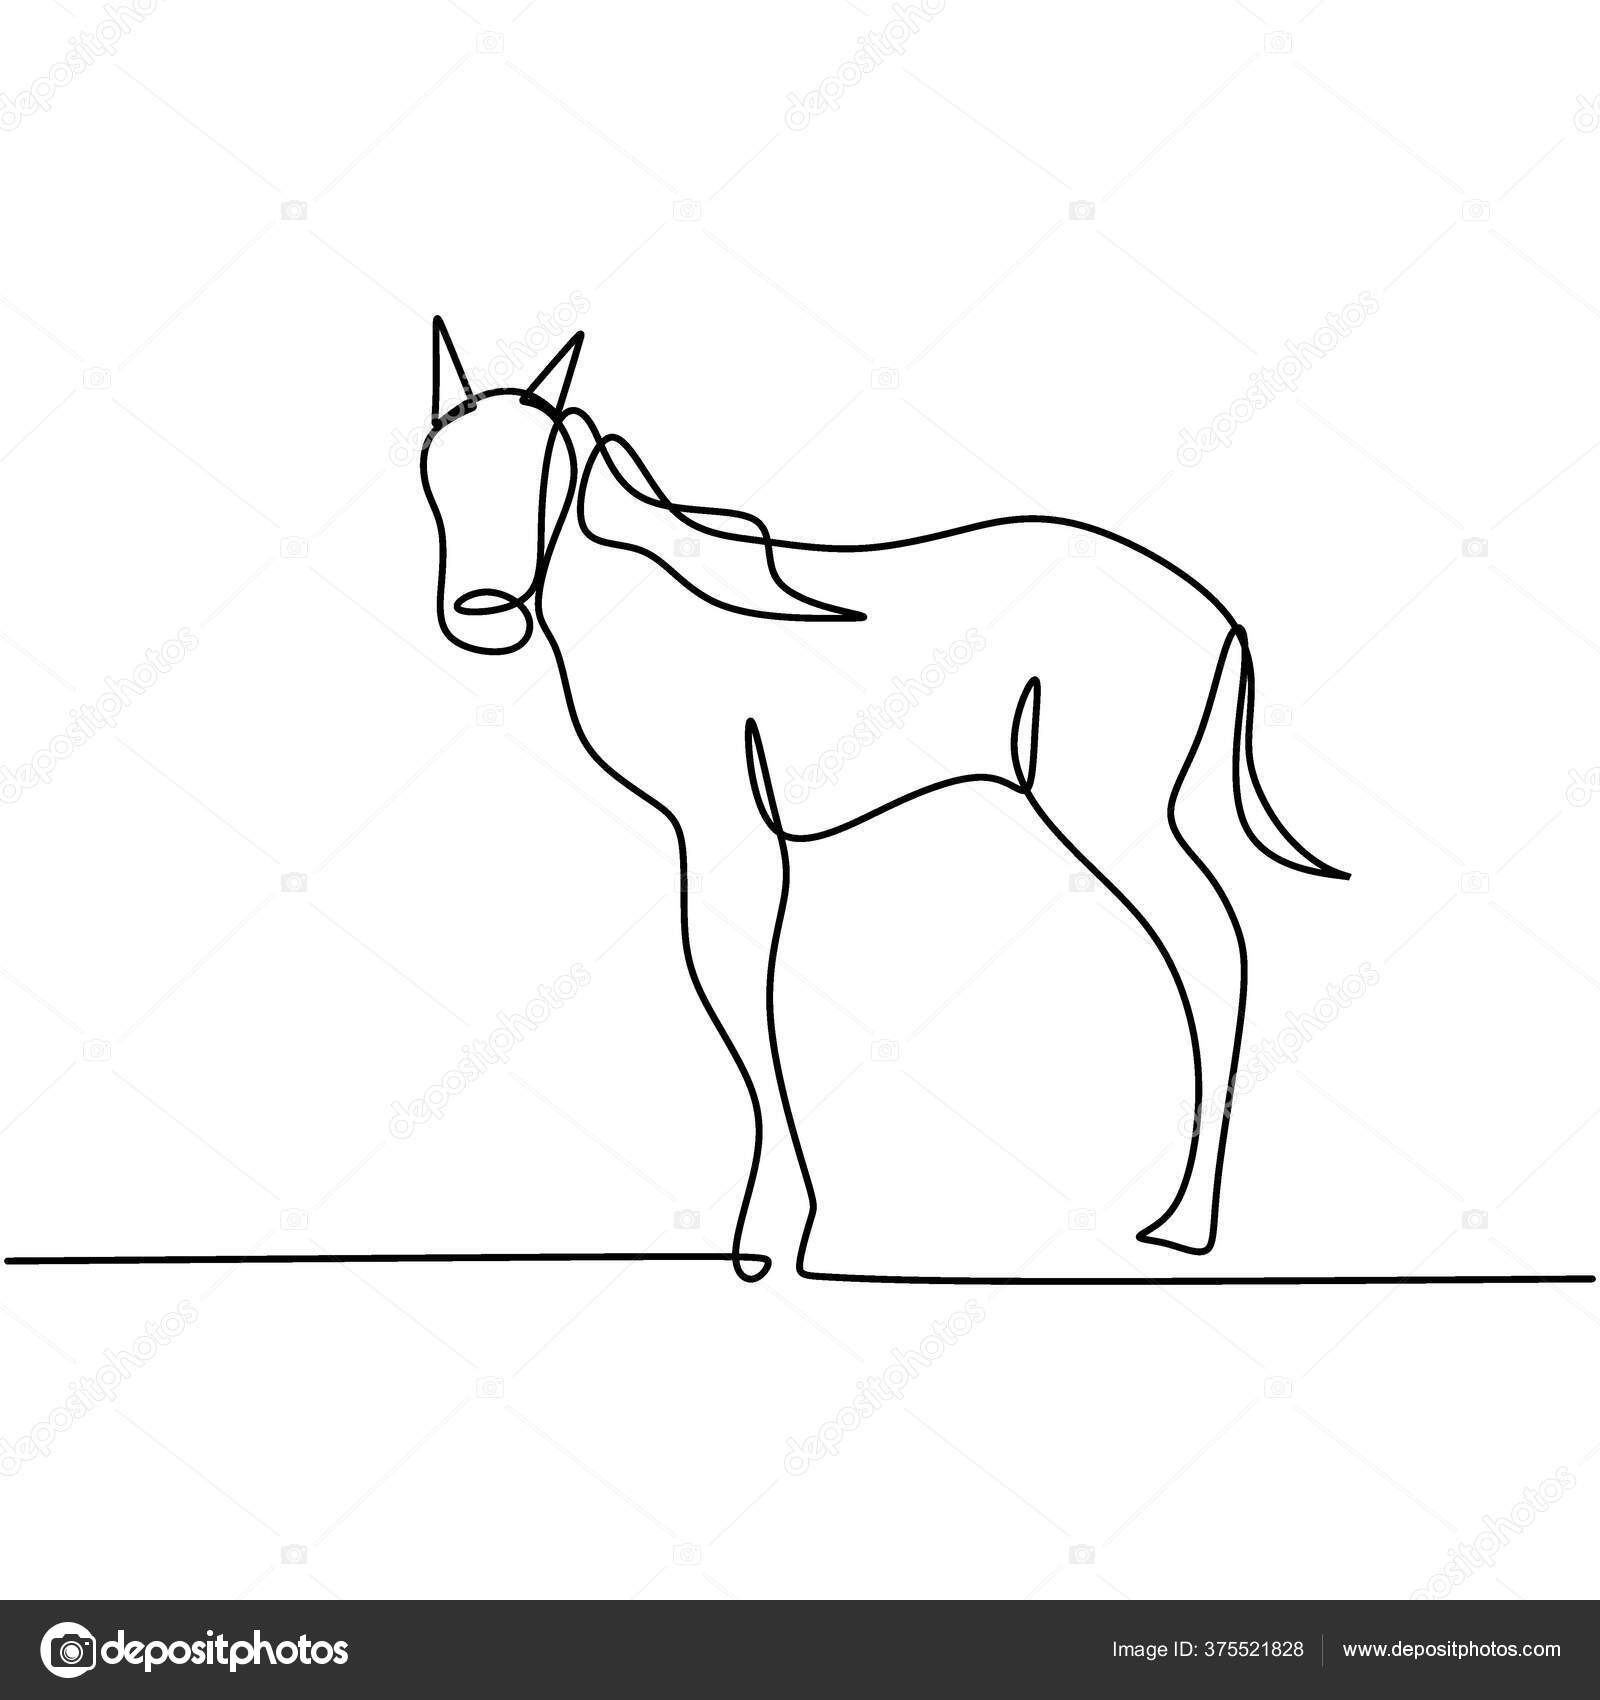 um desenho de linha contínua de um cavalo de elegância de luxo para a  identidade do logotipo da corporação. conceito de símbolo animal de  mamífero de cabeça equina forte. ilustração de desenho